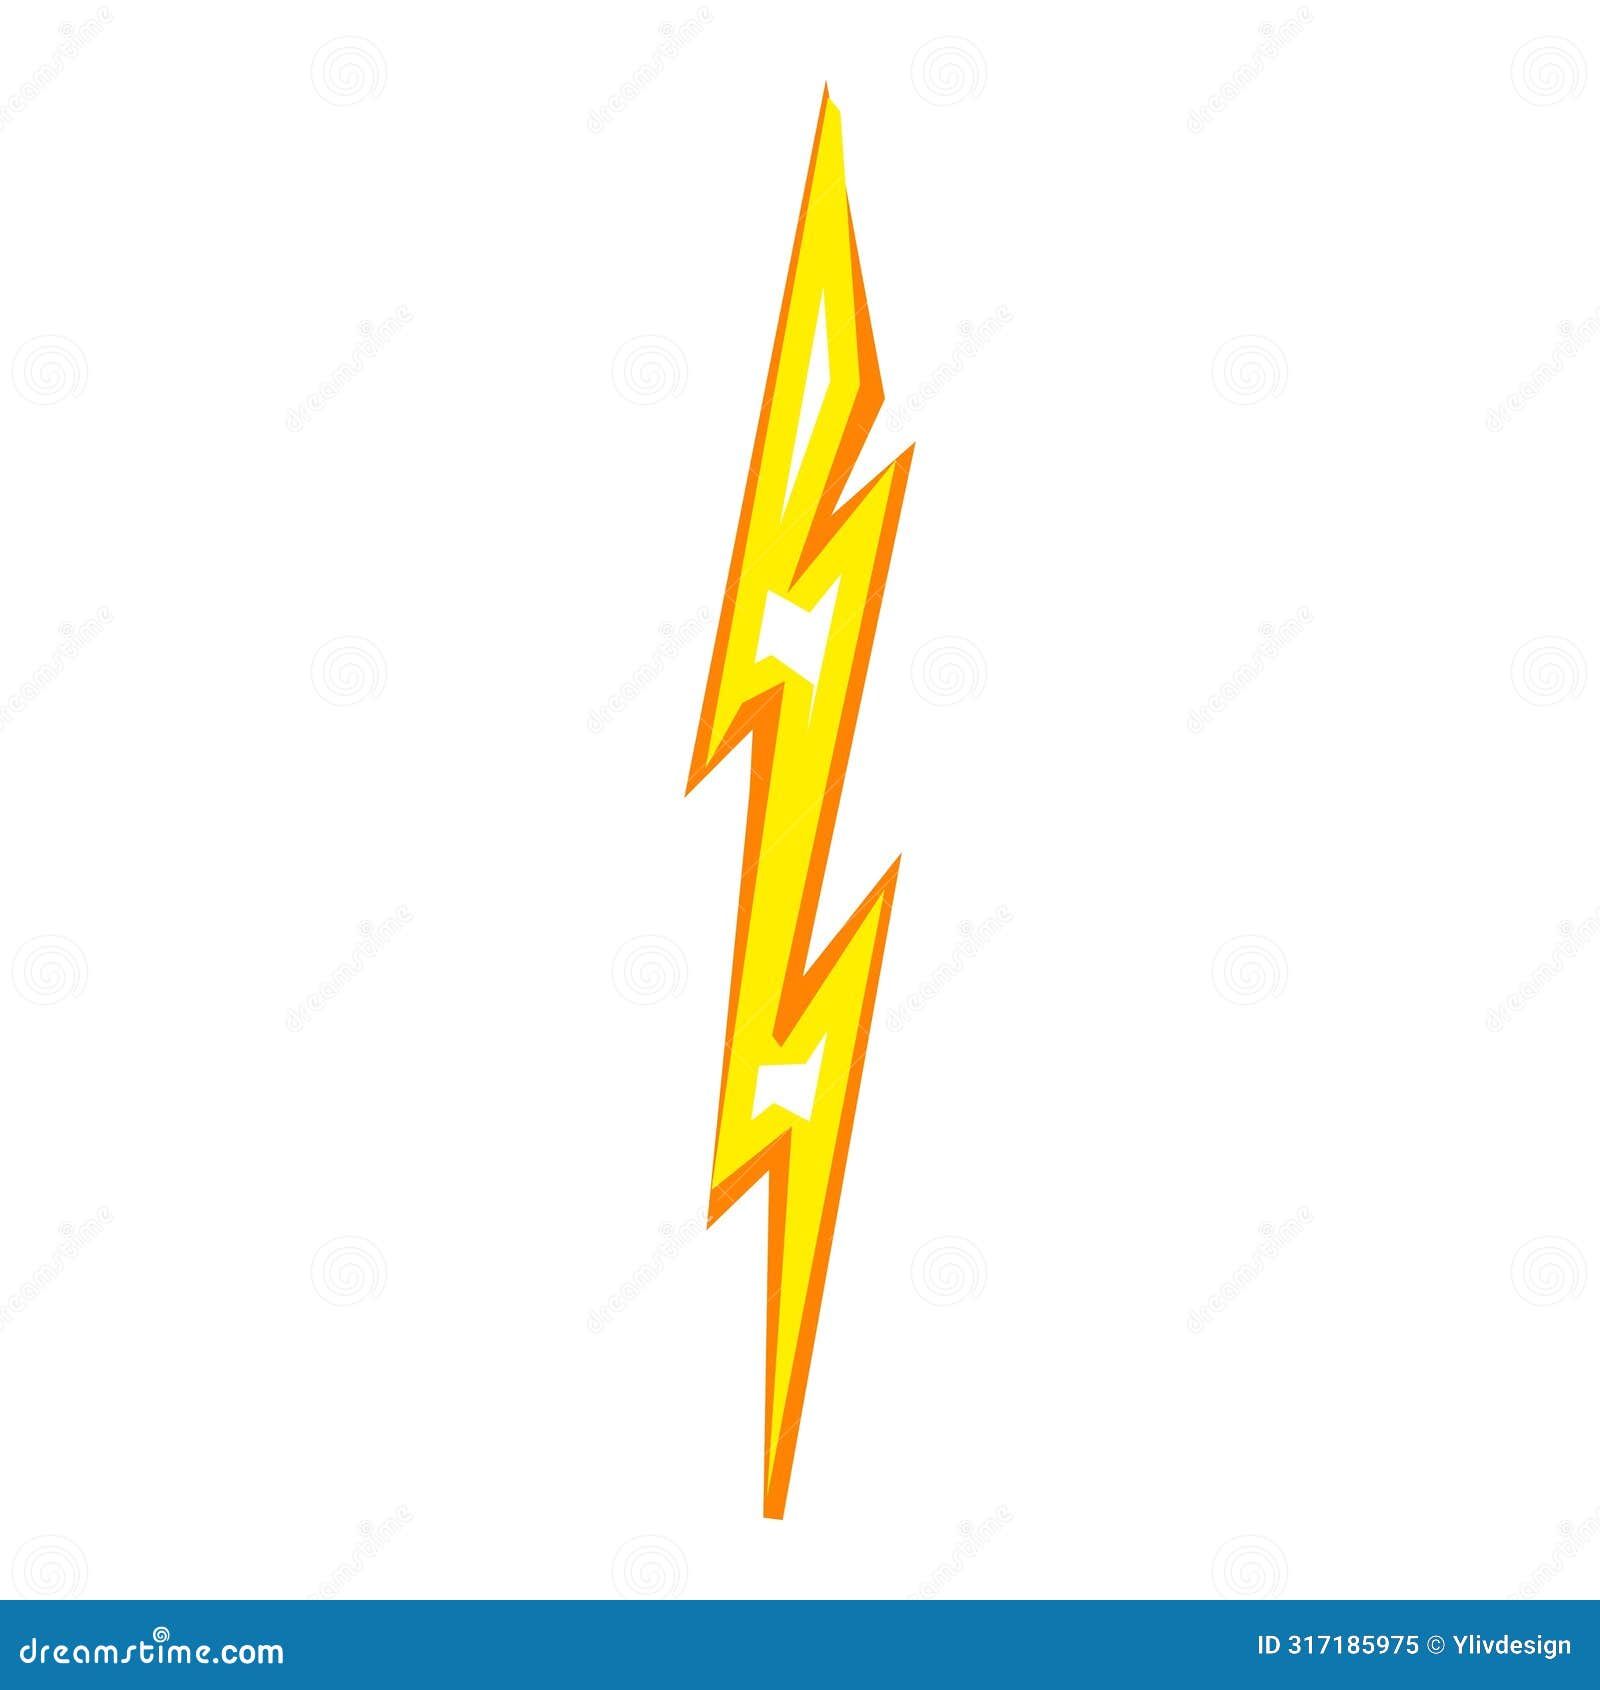 dazzle thunder bolt icon cartoon . charge shock